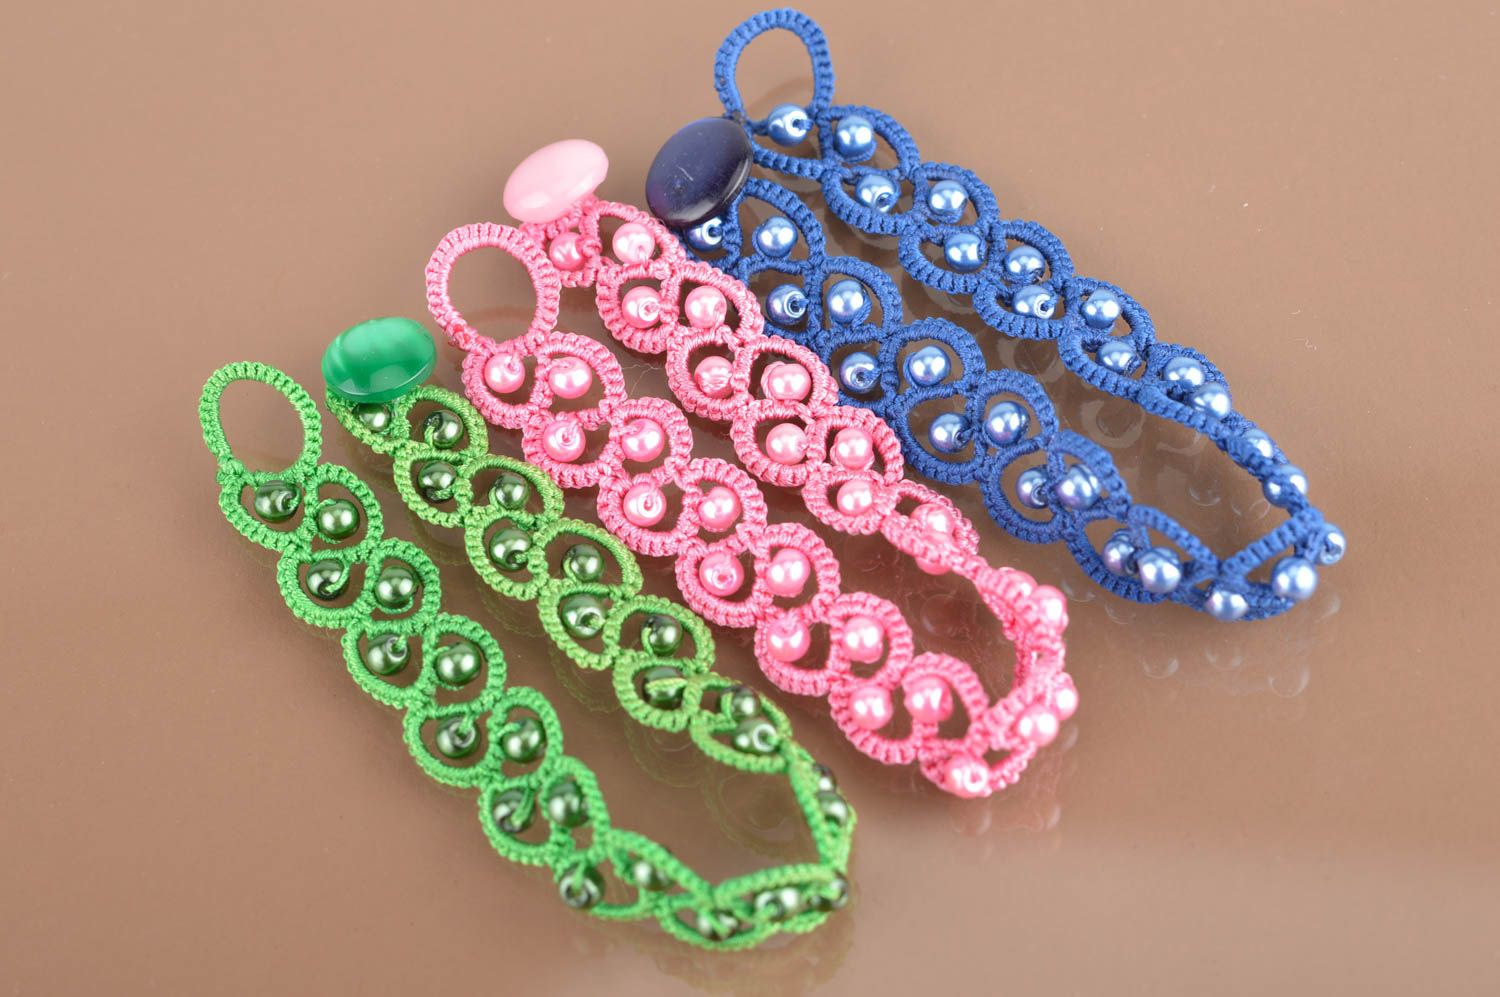 Комплект браслетов в технике фриволите синий розовый зеленый 3 изделия хенд мейд фото 2